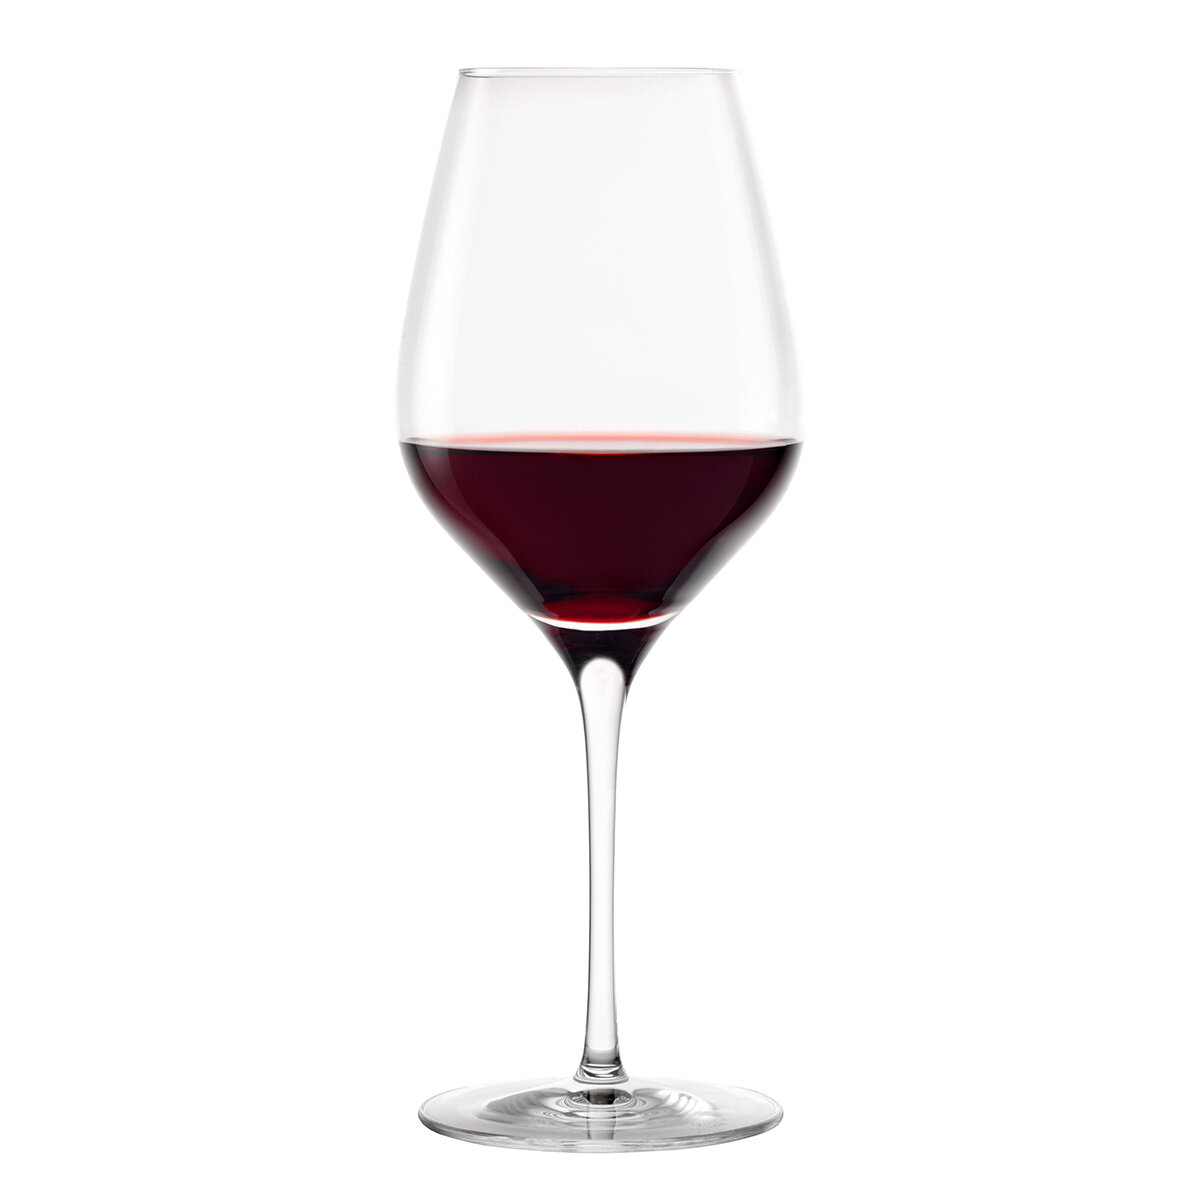 Stölzle Exquisit Royal Wine Glasses, 642ml, 8 Pack